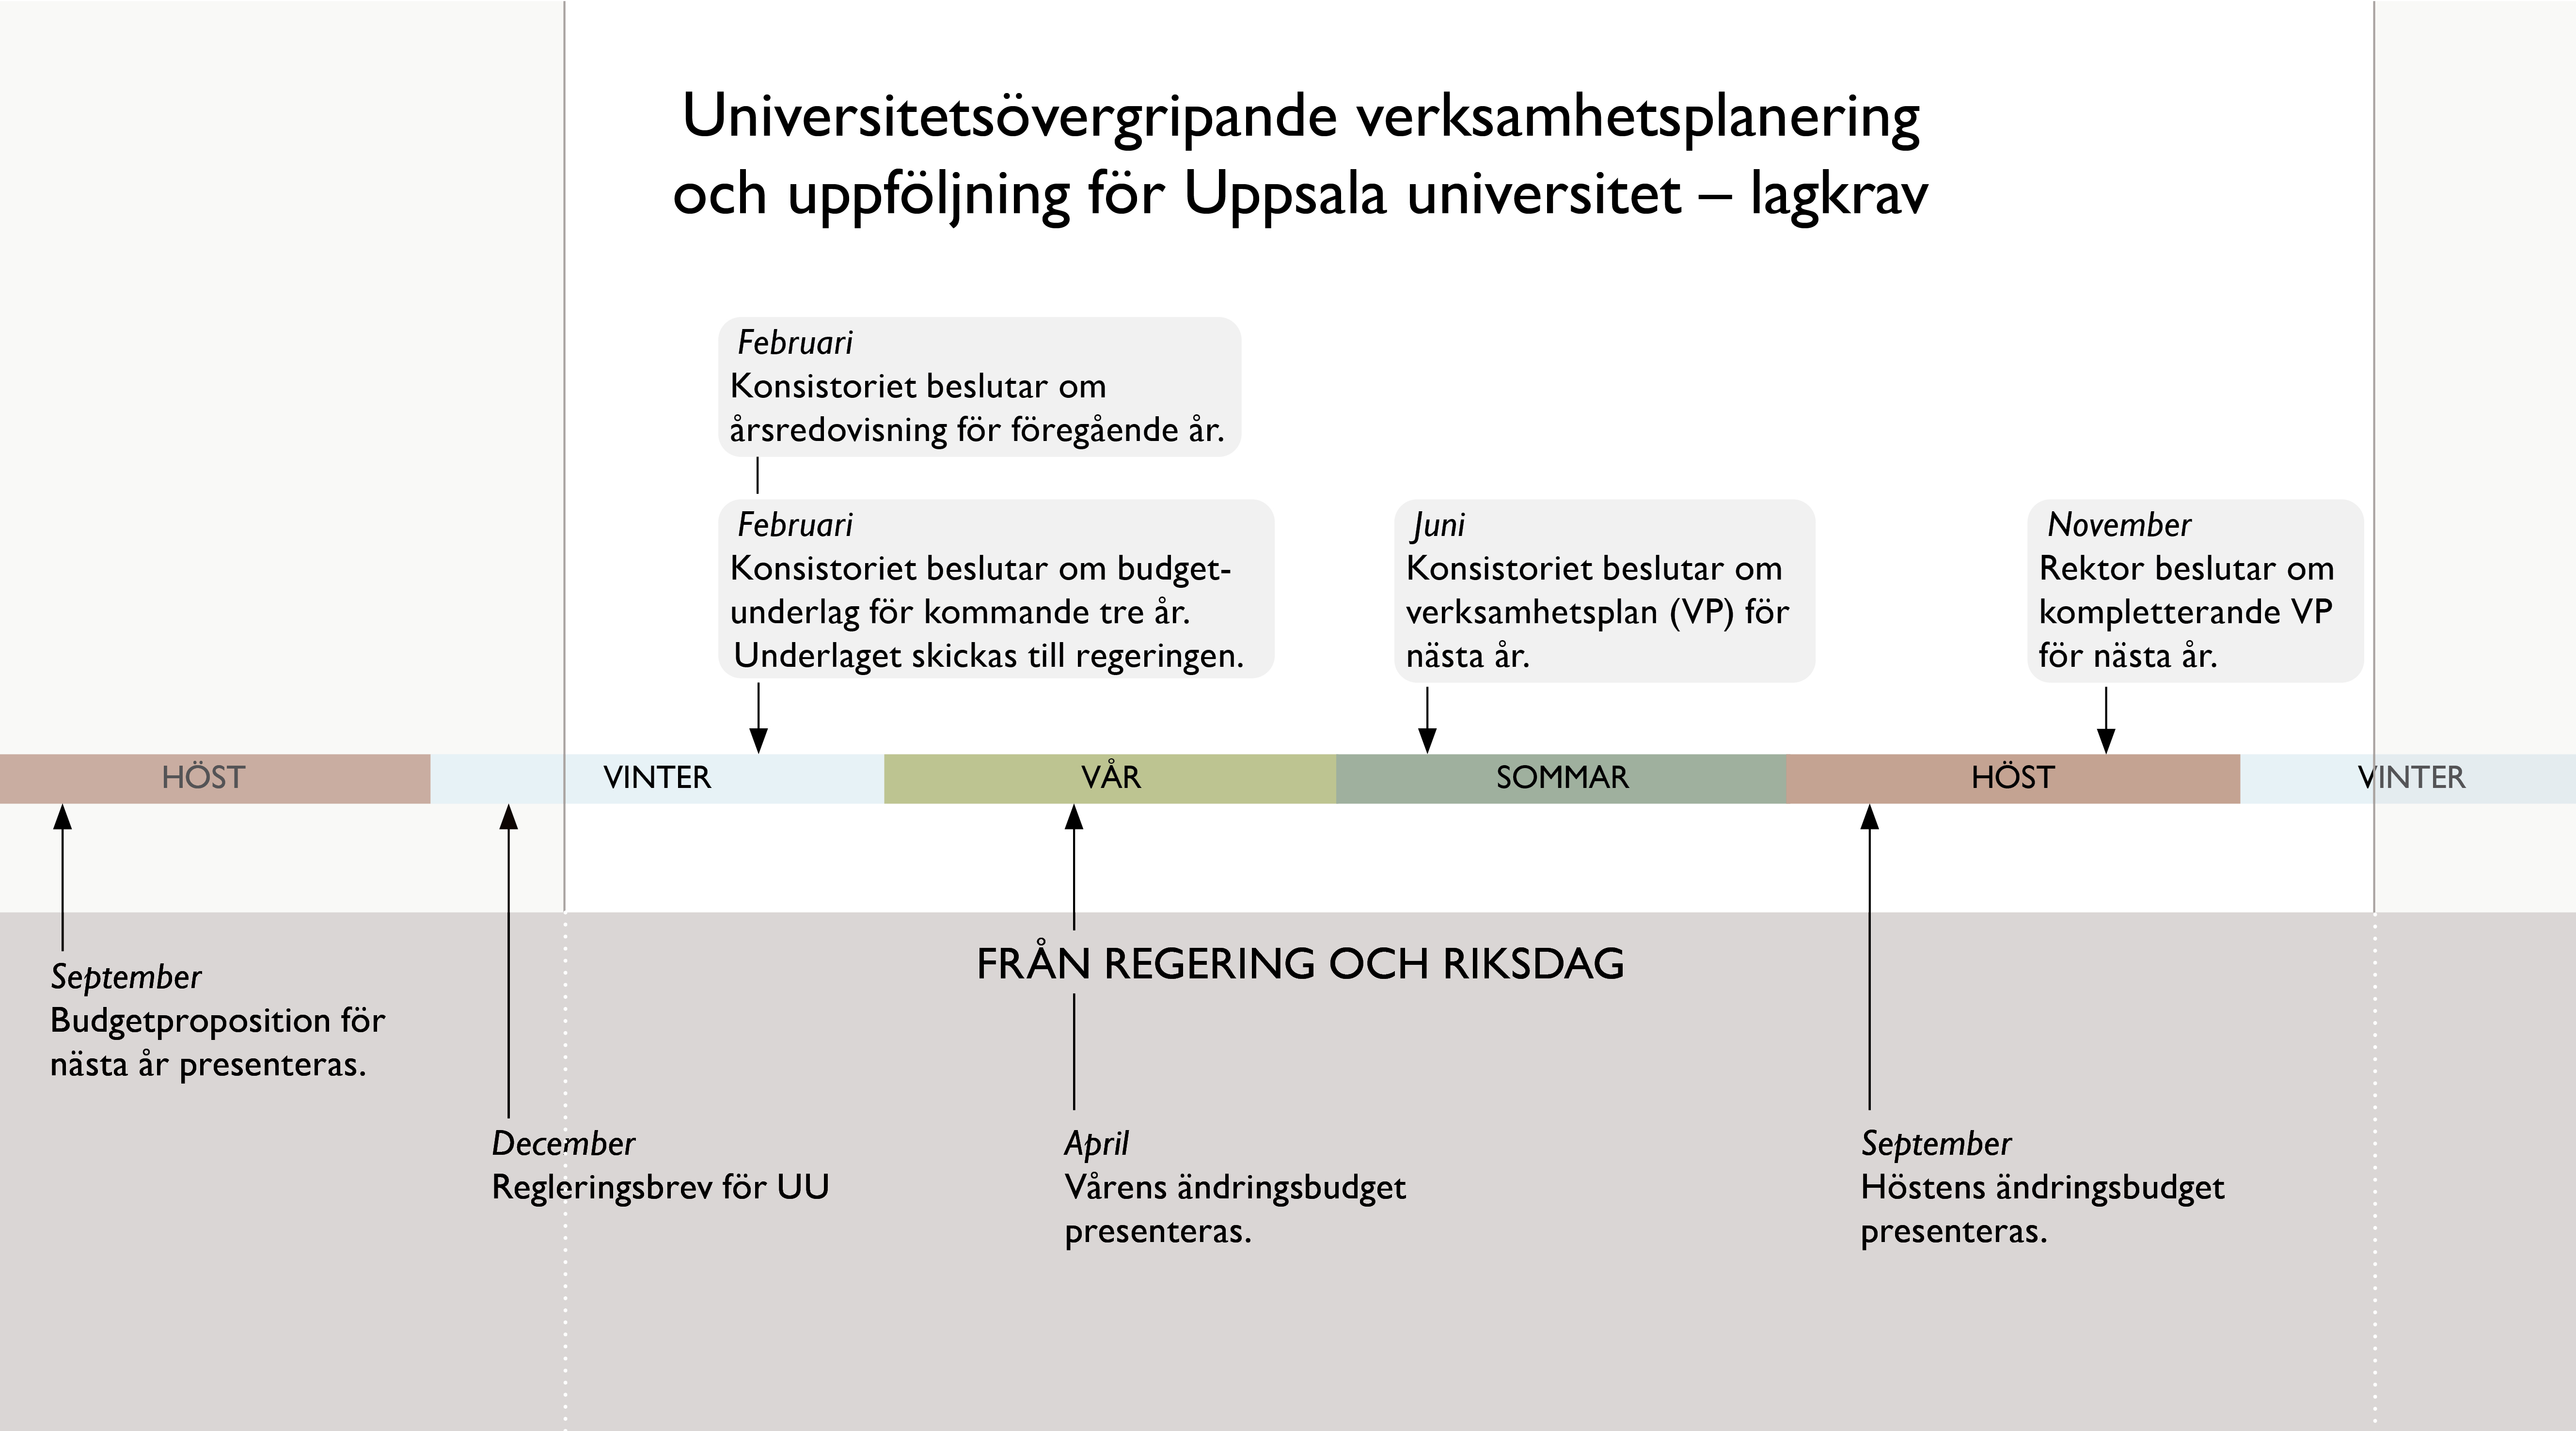 Bilden visar processen för verksamhetsplanering vid Uppsala universitet och de lagkrav som styr den. Processen beskrivs i bildtexten.